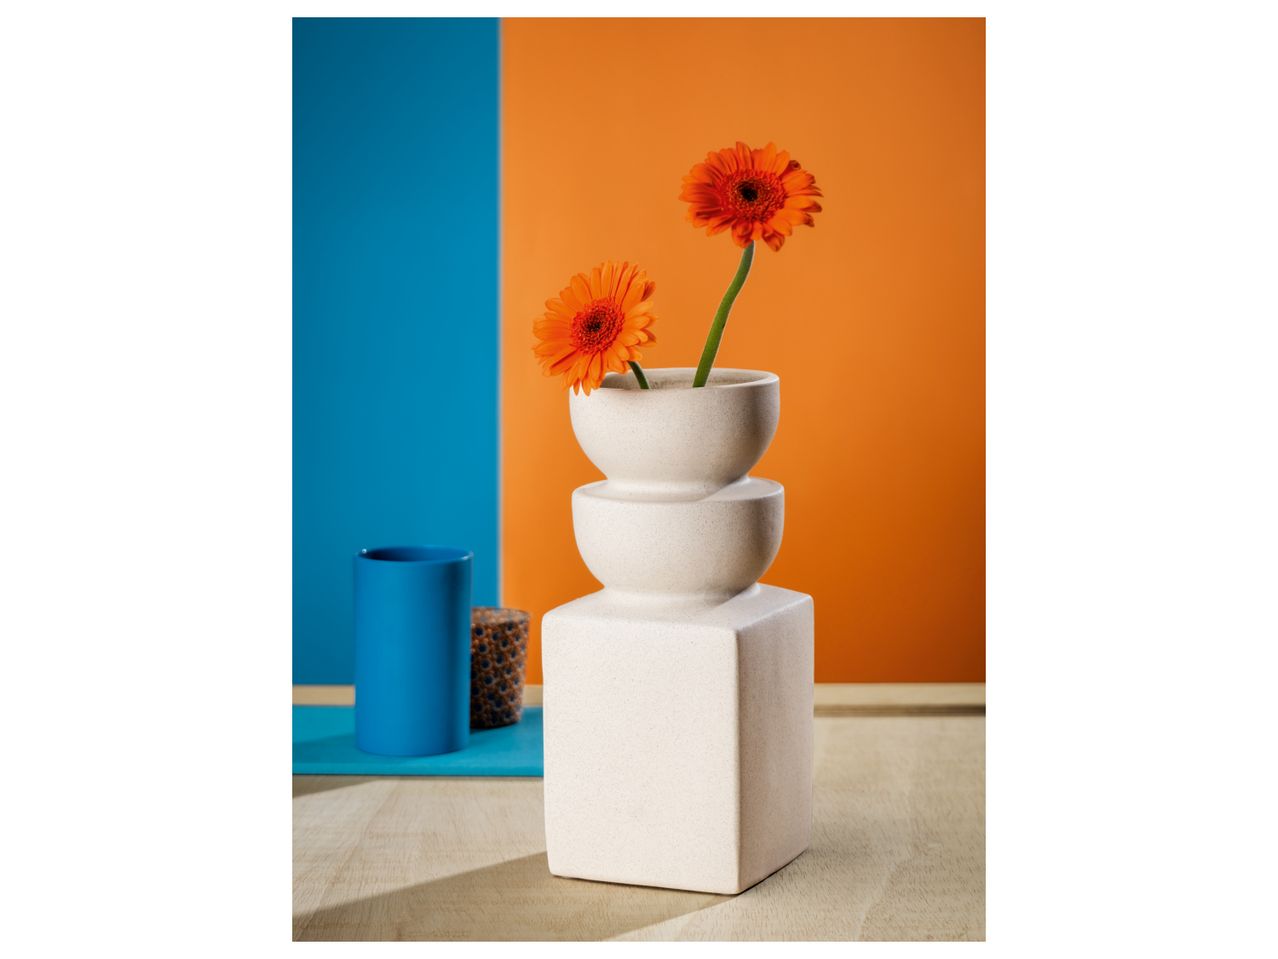 Vaso in ceramica , prezzo 4.99 EUR 
Vaso in ceramica 
Dimensioni
- 18 x 6,5 x 20 ...